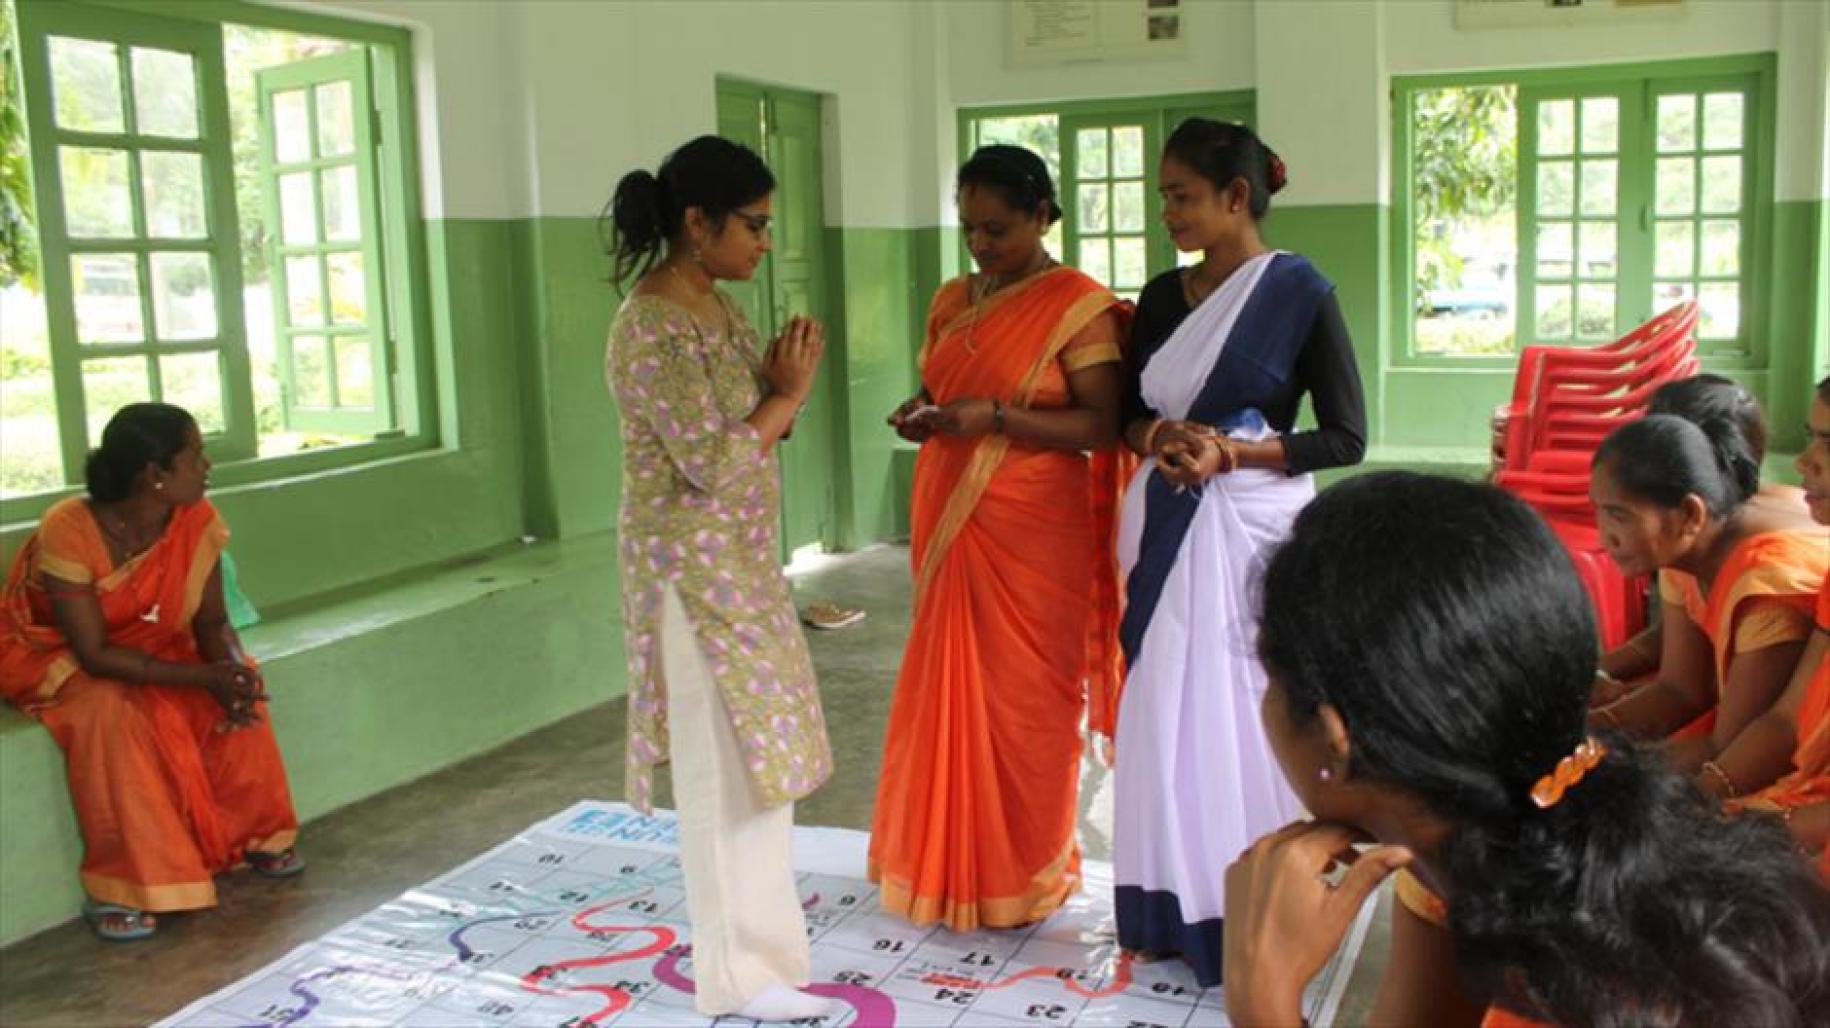 Jugnu俱乐部的一名成员接受联合国妇女署的培训，以支持遭受性别暴力的妇女。